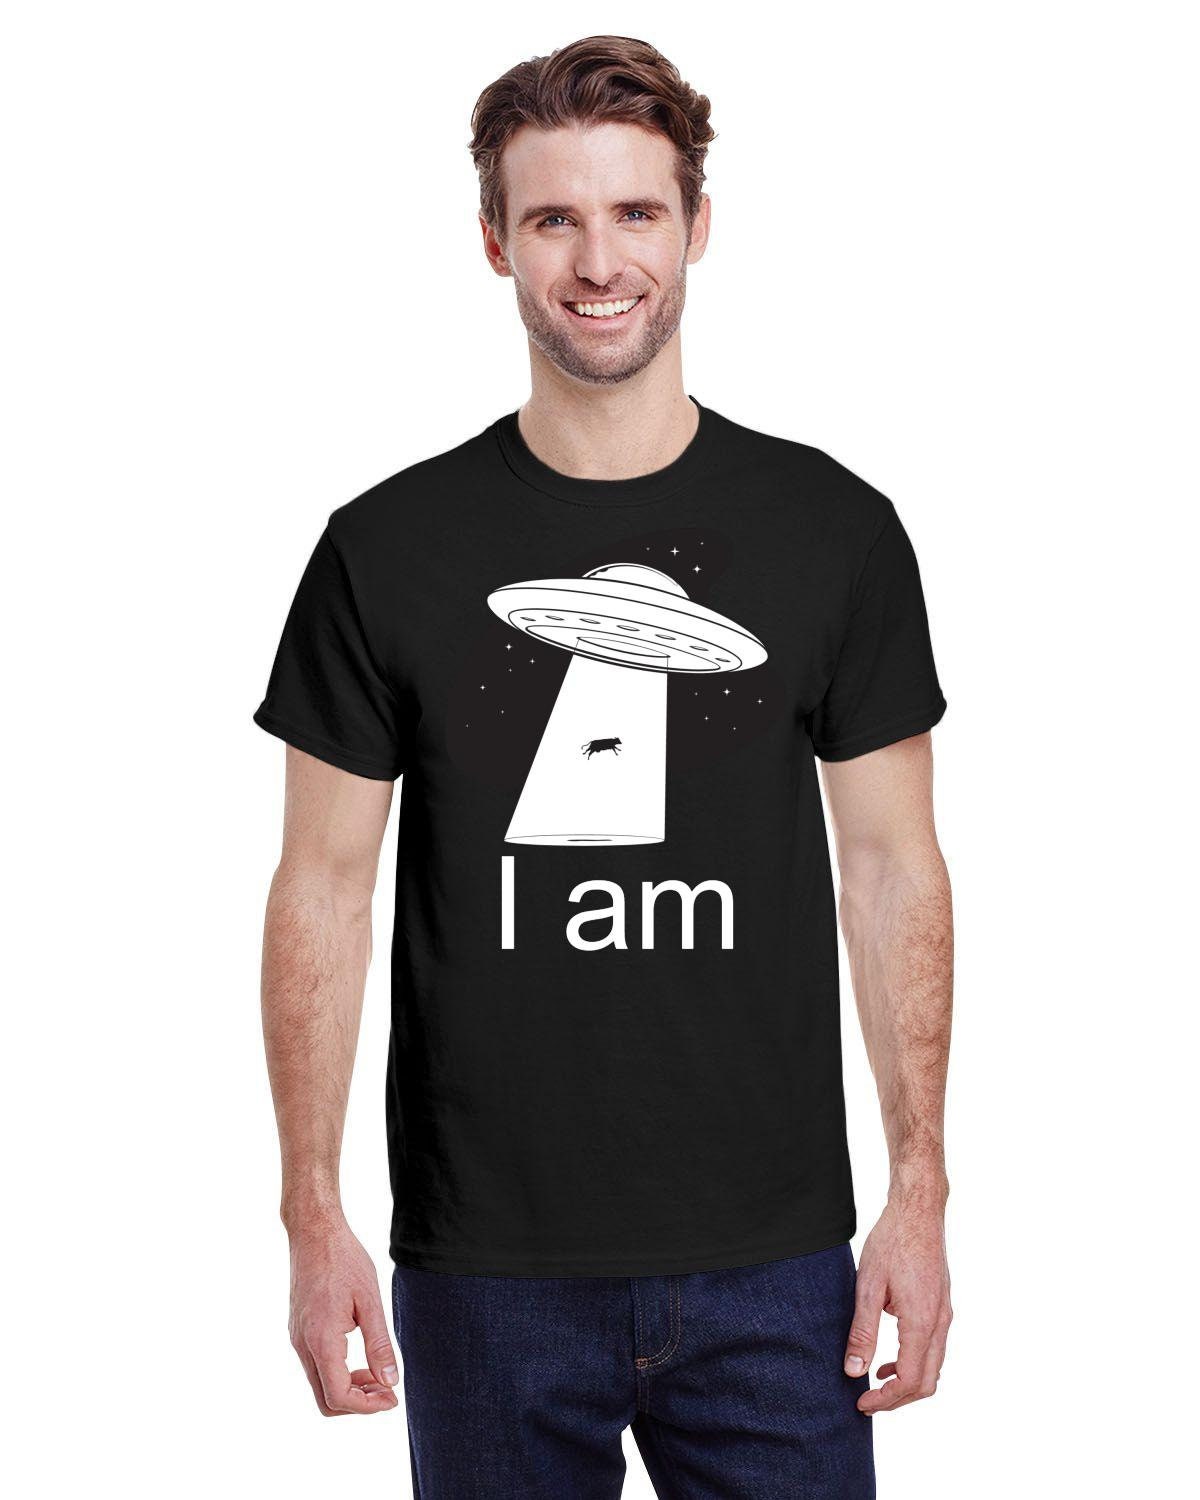 Koszula UFO, koszula porwania przez kosmitów, koszula z kosmosu, limonkowy kosmita, dziwna koszula, koszulka kosmiczna, koszulka z latającym spodkiem, koszulka z festiwalem Alien - plusminusco.com